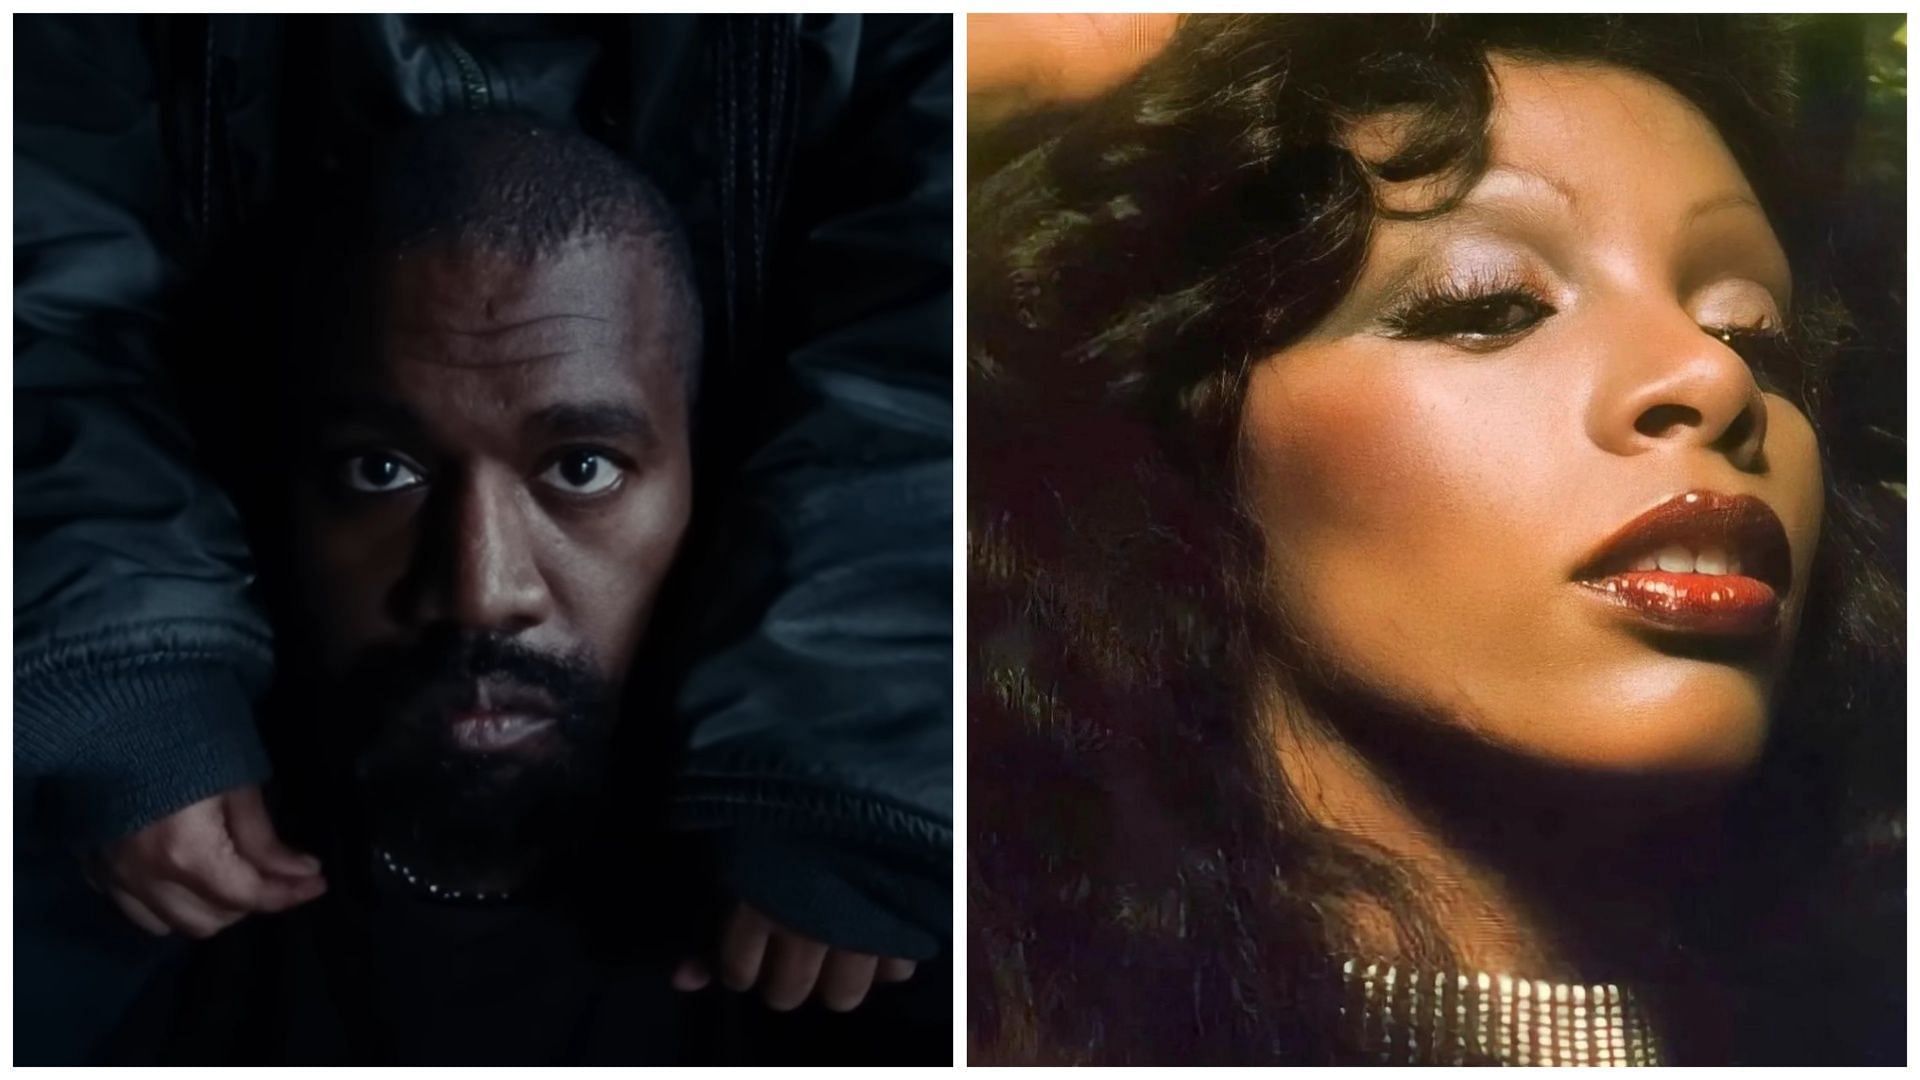 Donna Summers estate alleges copyright infringement on Kanye West (Image via Instagram/@officialdonnasummer, YouTube/Kanye West)